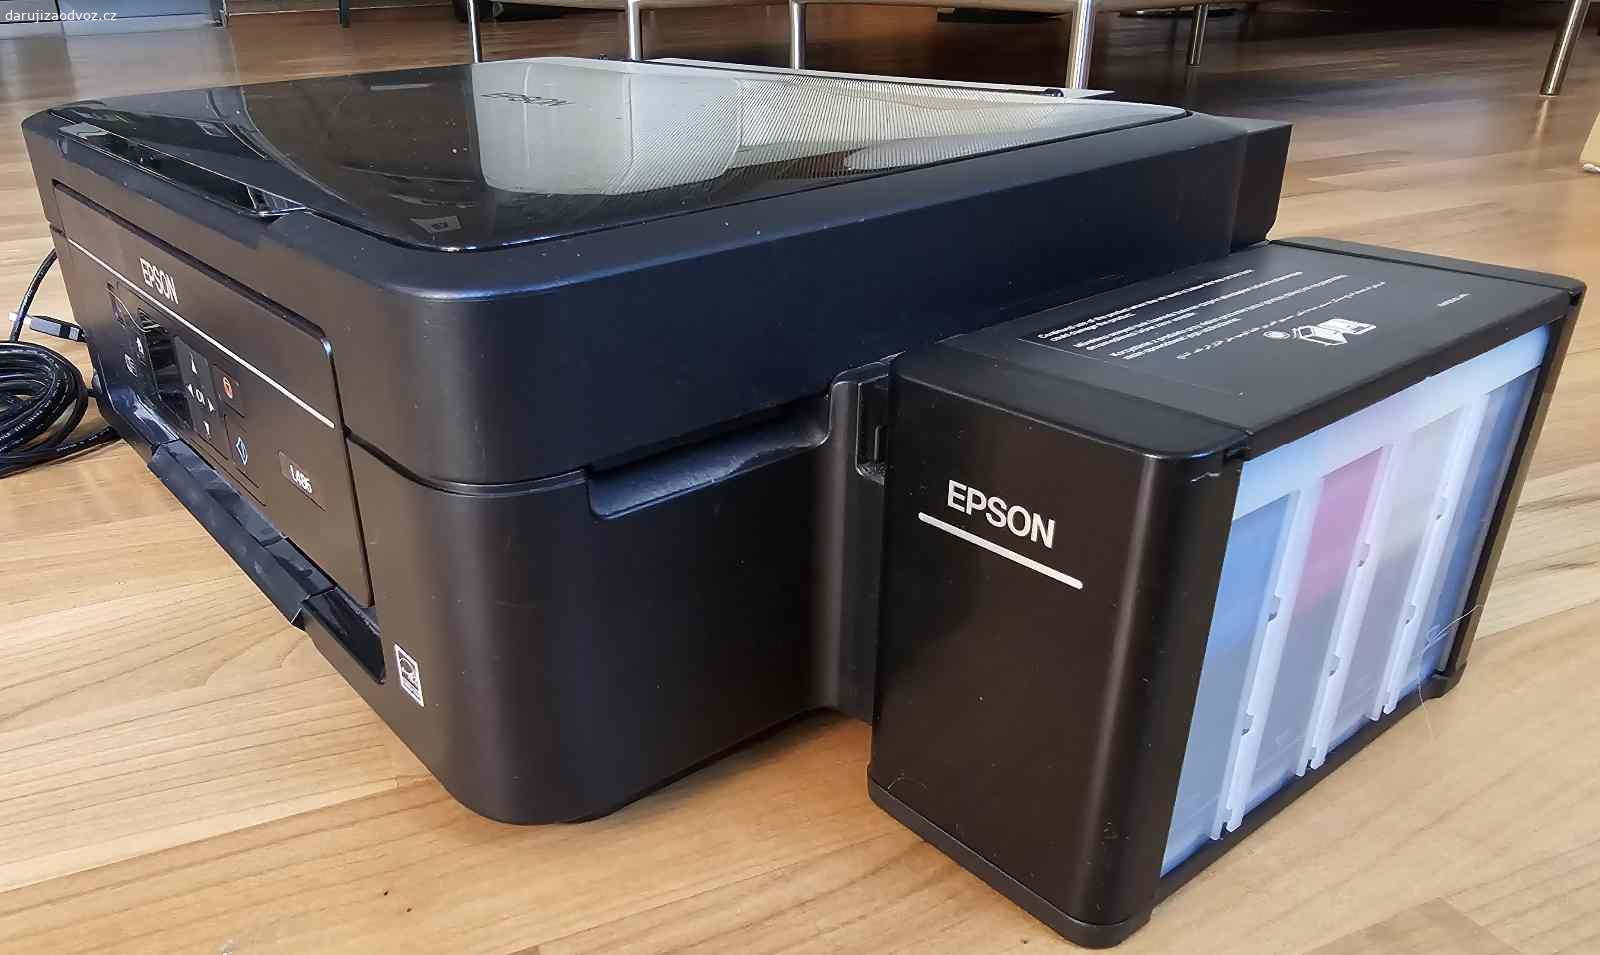 Daruji tiskárnu se skenerem EPSON L486. Daruji tiskárnu se skenerem Epson 486, jde o tiskárnu takzvaně tankovou, tedy s velkými zásobníky barvy. České menu na displeji. Tiskárnu bude třeba rozhodit, už dlouho jsem na ní netisknuul, skener je plně funkční. Software je dostupný v tehnciké podpoře Epsonu - https://www.epson.cz/cs_CZ/support/sc/epson-l486/s/s1499. Nejlepší by byl odvoz dnes nebo zítra večer.